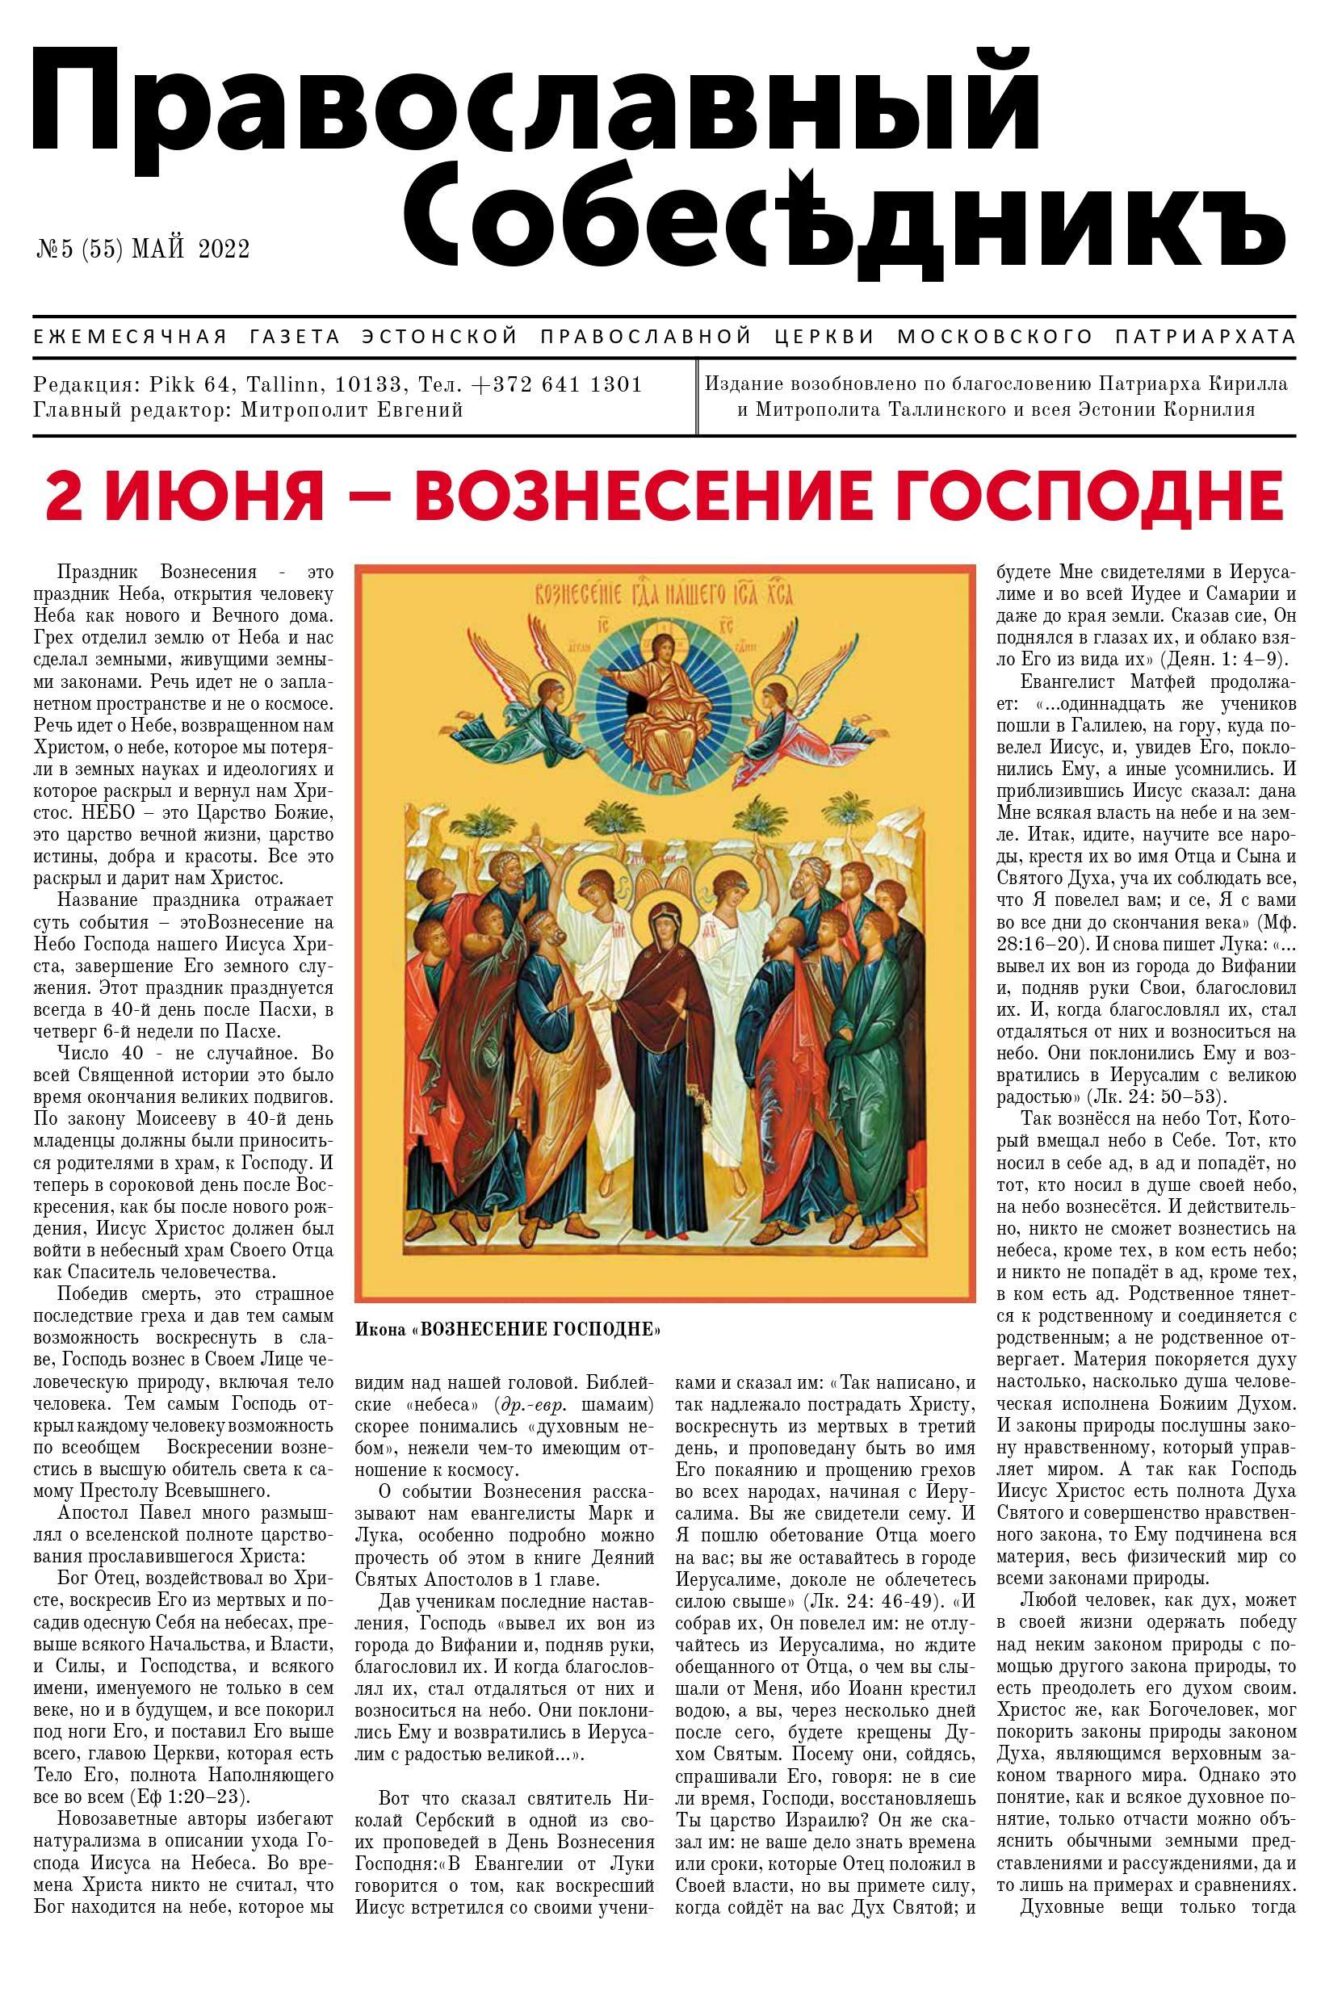 Православный Собеседник, май 2022. Обложка